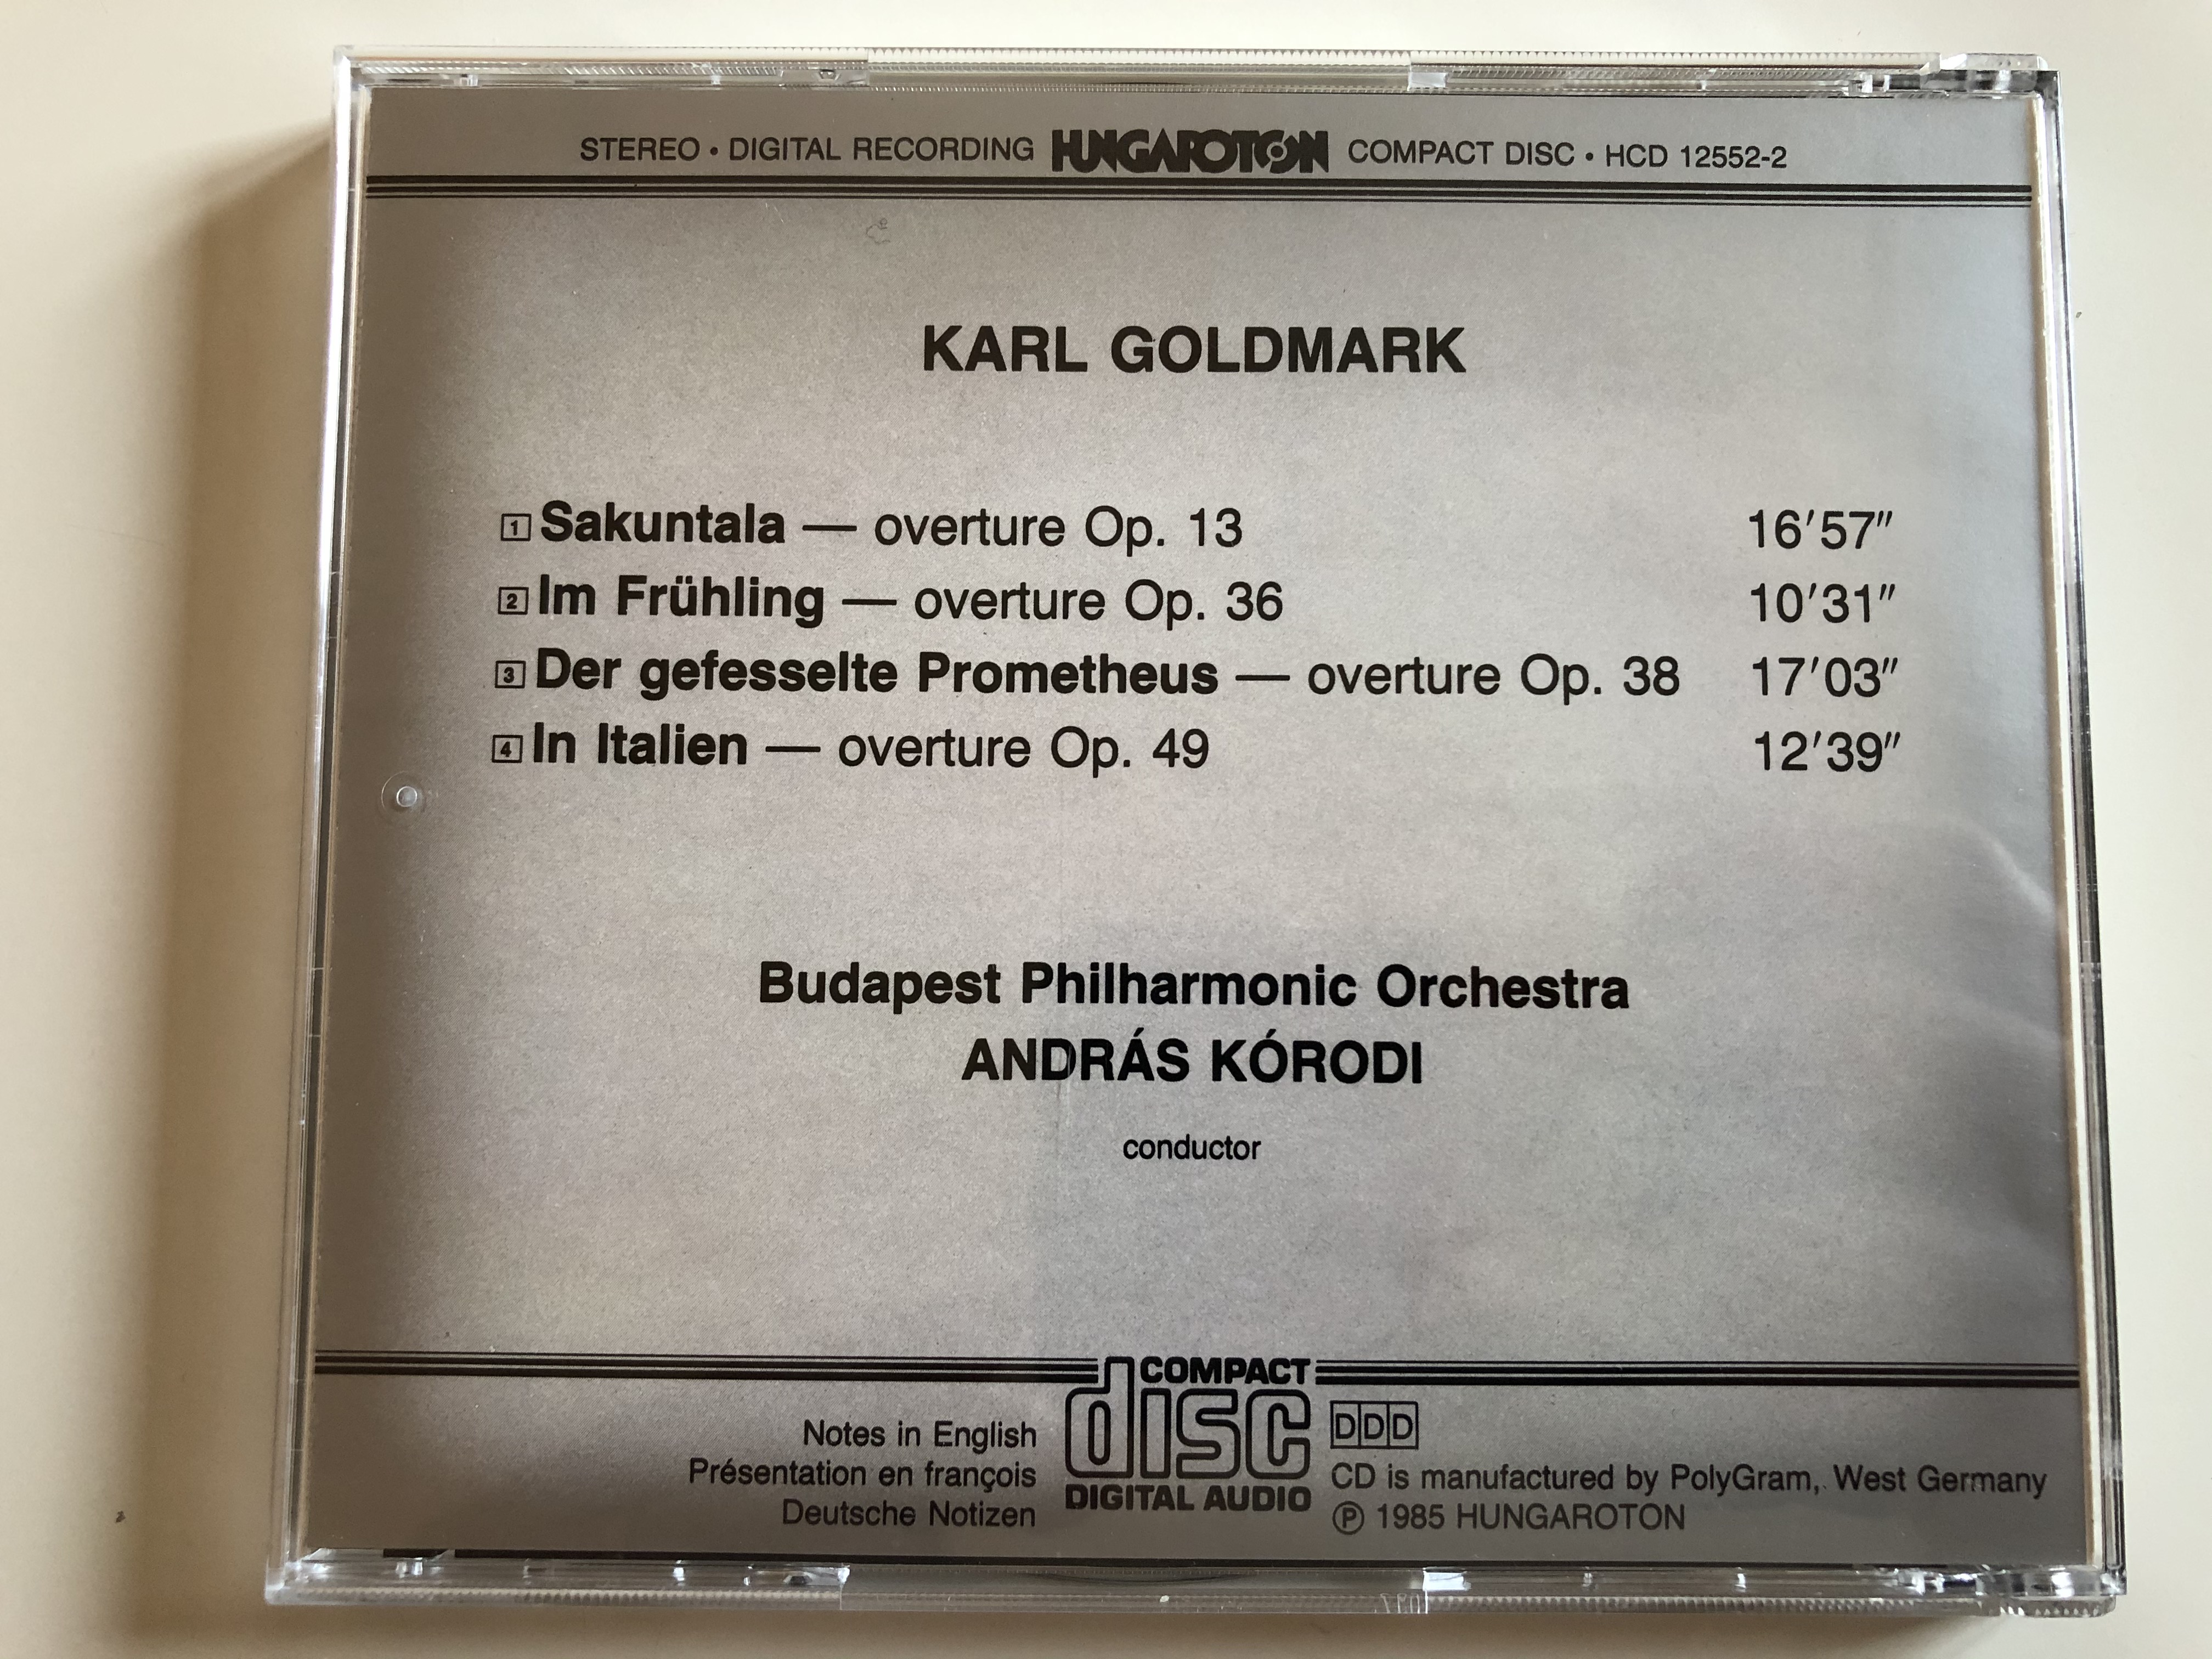 karl-goldmark-overtures-sakuntala-im-fr-hling-prometheus-in-italien-budapest-philharmonic-orchestra-andr-s-k-rodi-hungaroton-audio-cd-1985-stereo-hcd-12552-2-8-.jpg